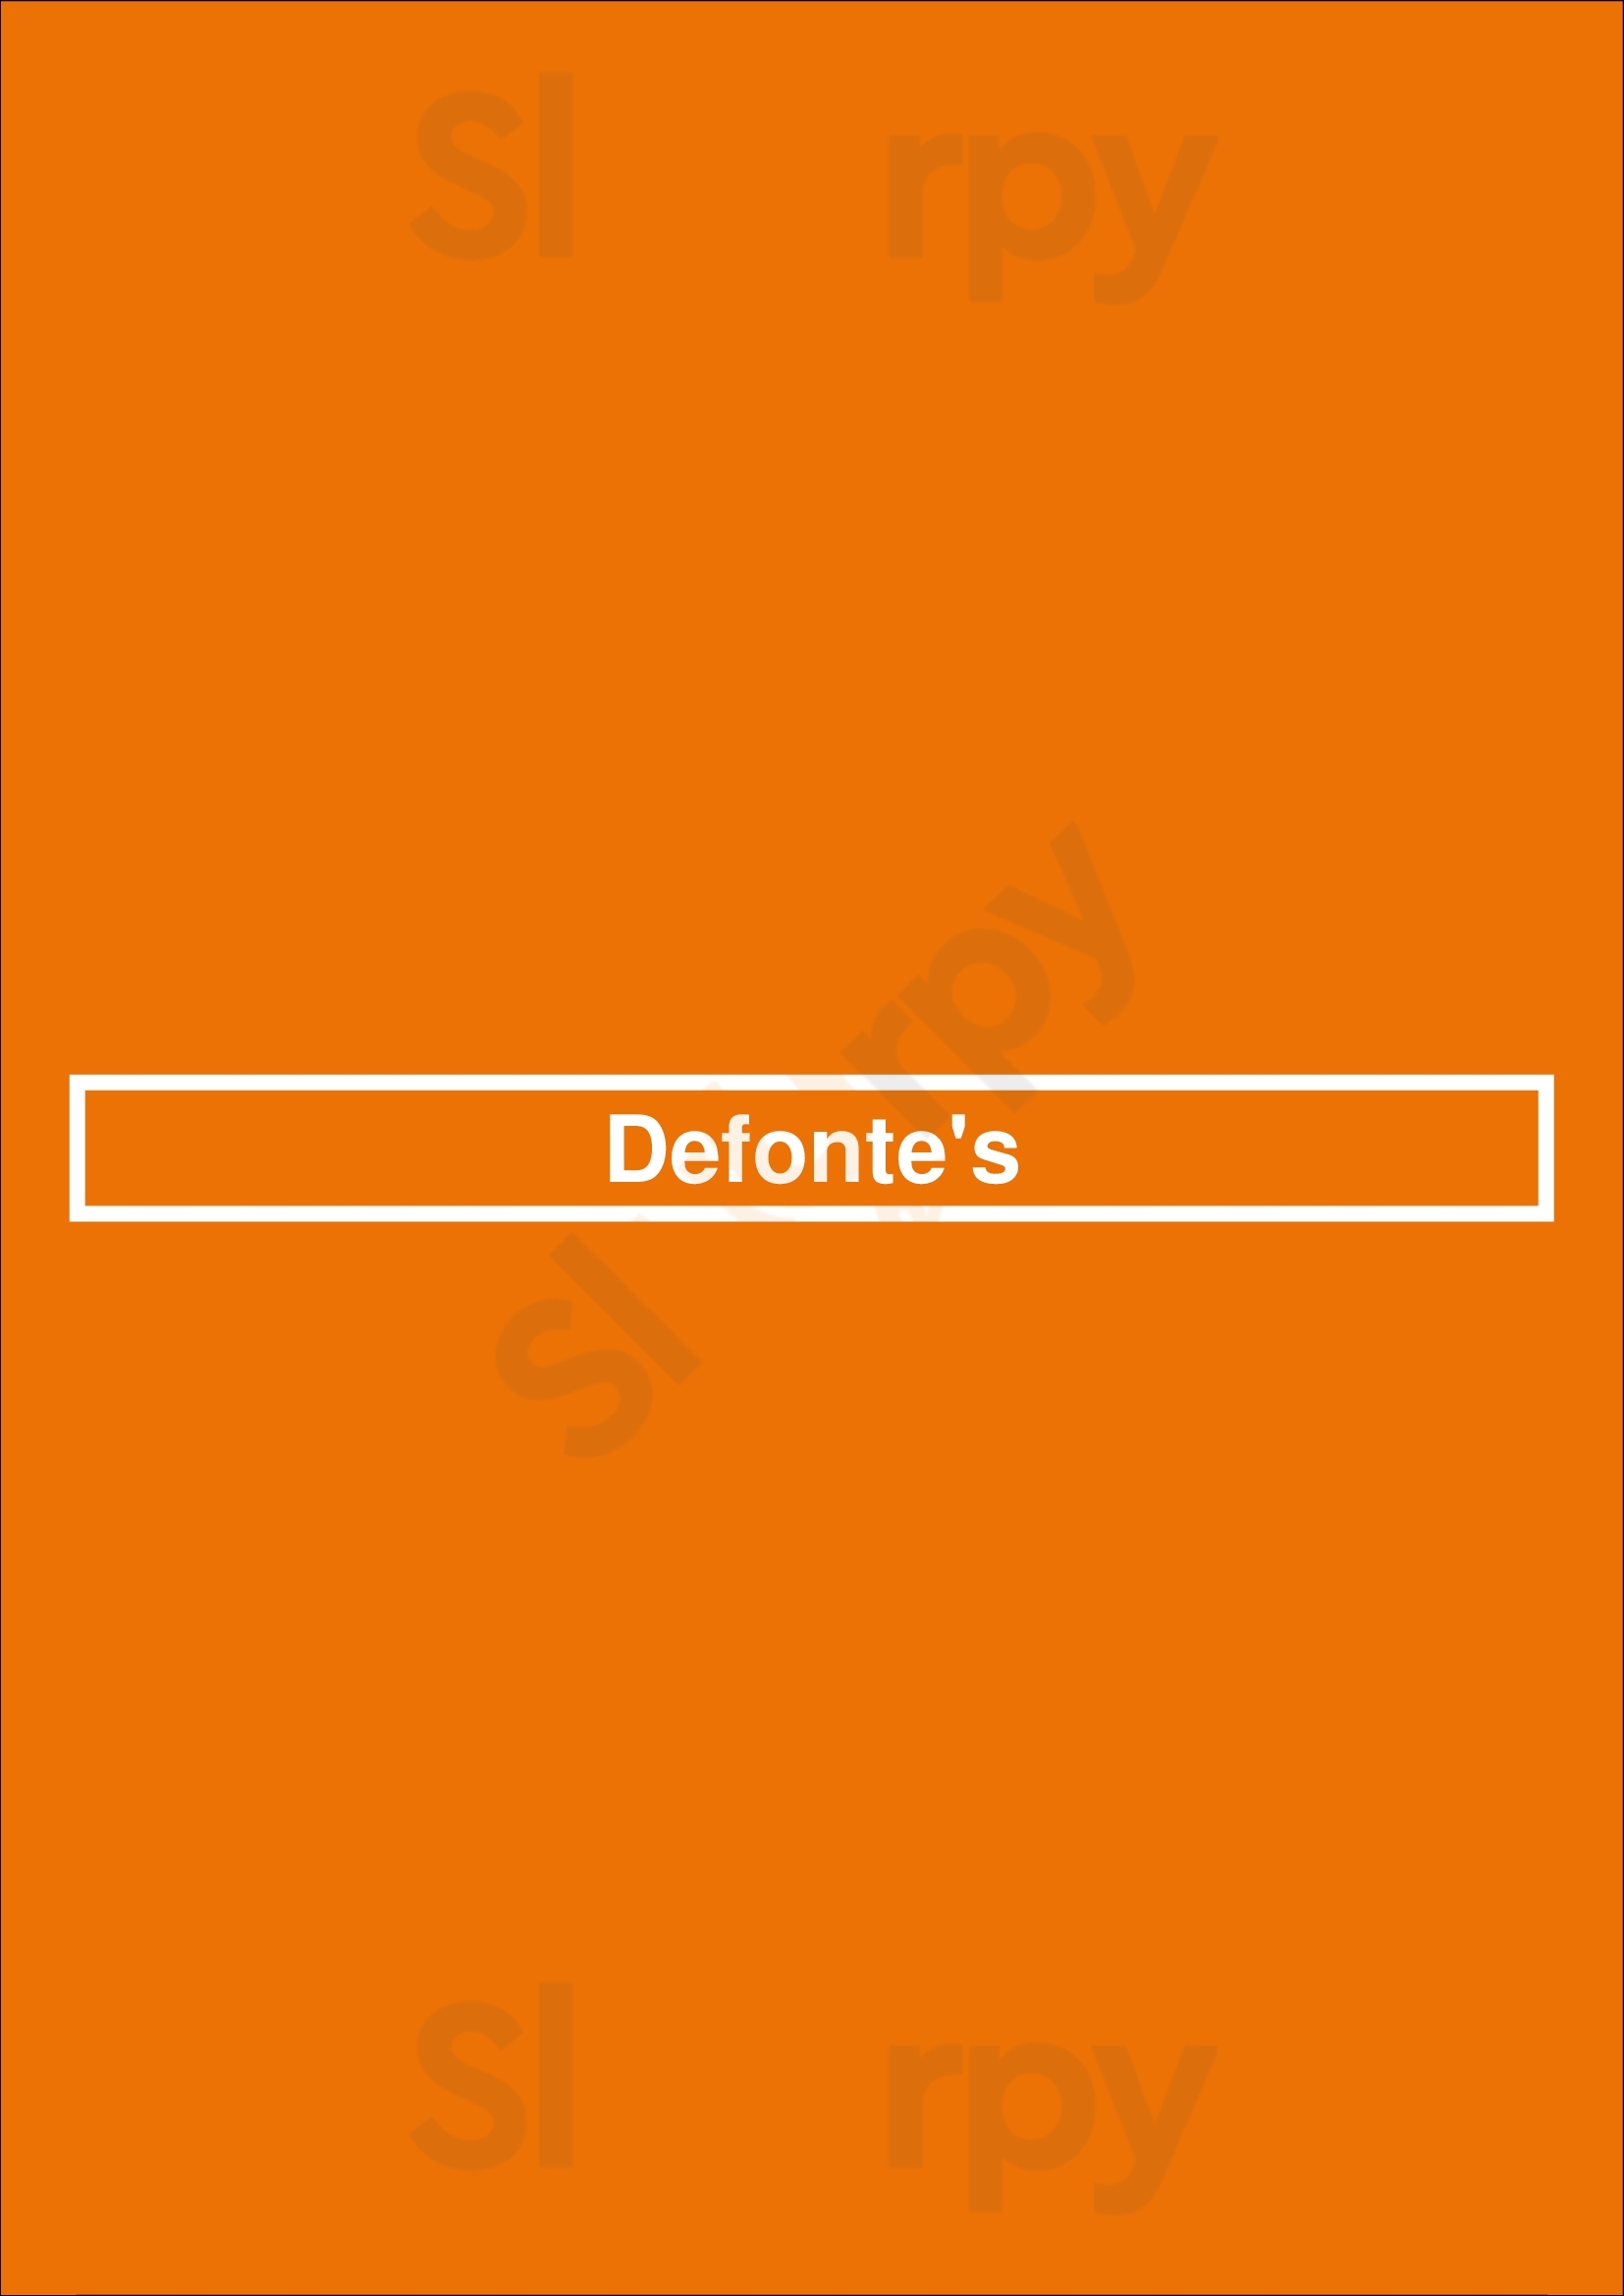 Defonte's Staten Island Menu - 1